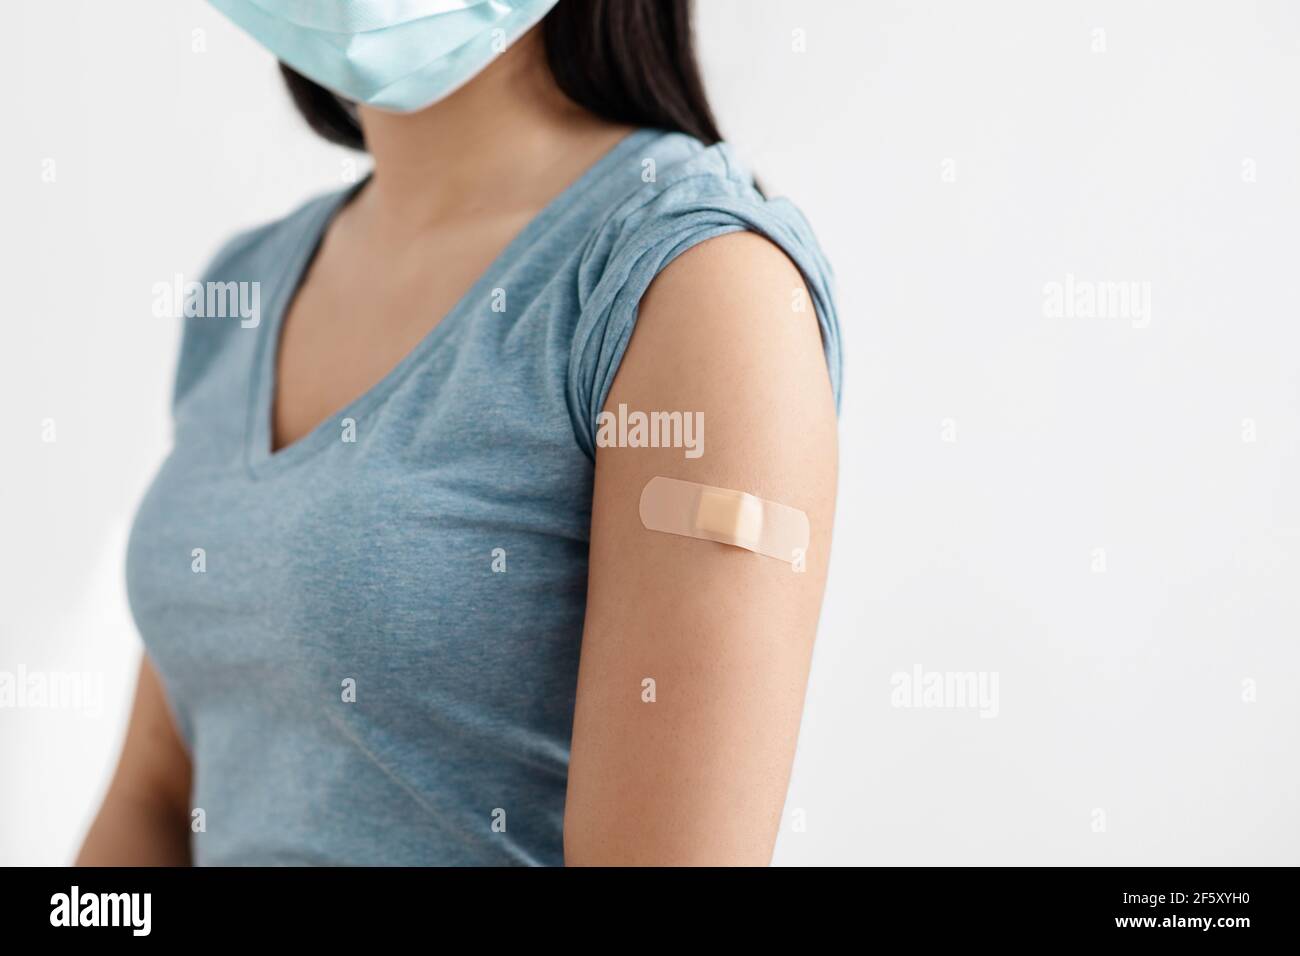 Schützen Sie sich selbst und Gesundheitsversorgung, Impfung der Bevölkerung, stoppen covid-19 Ausbruch Stockfoto